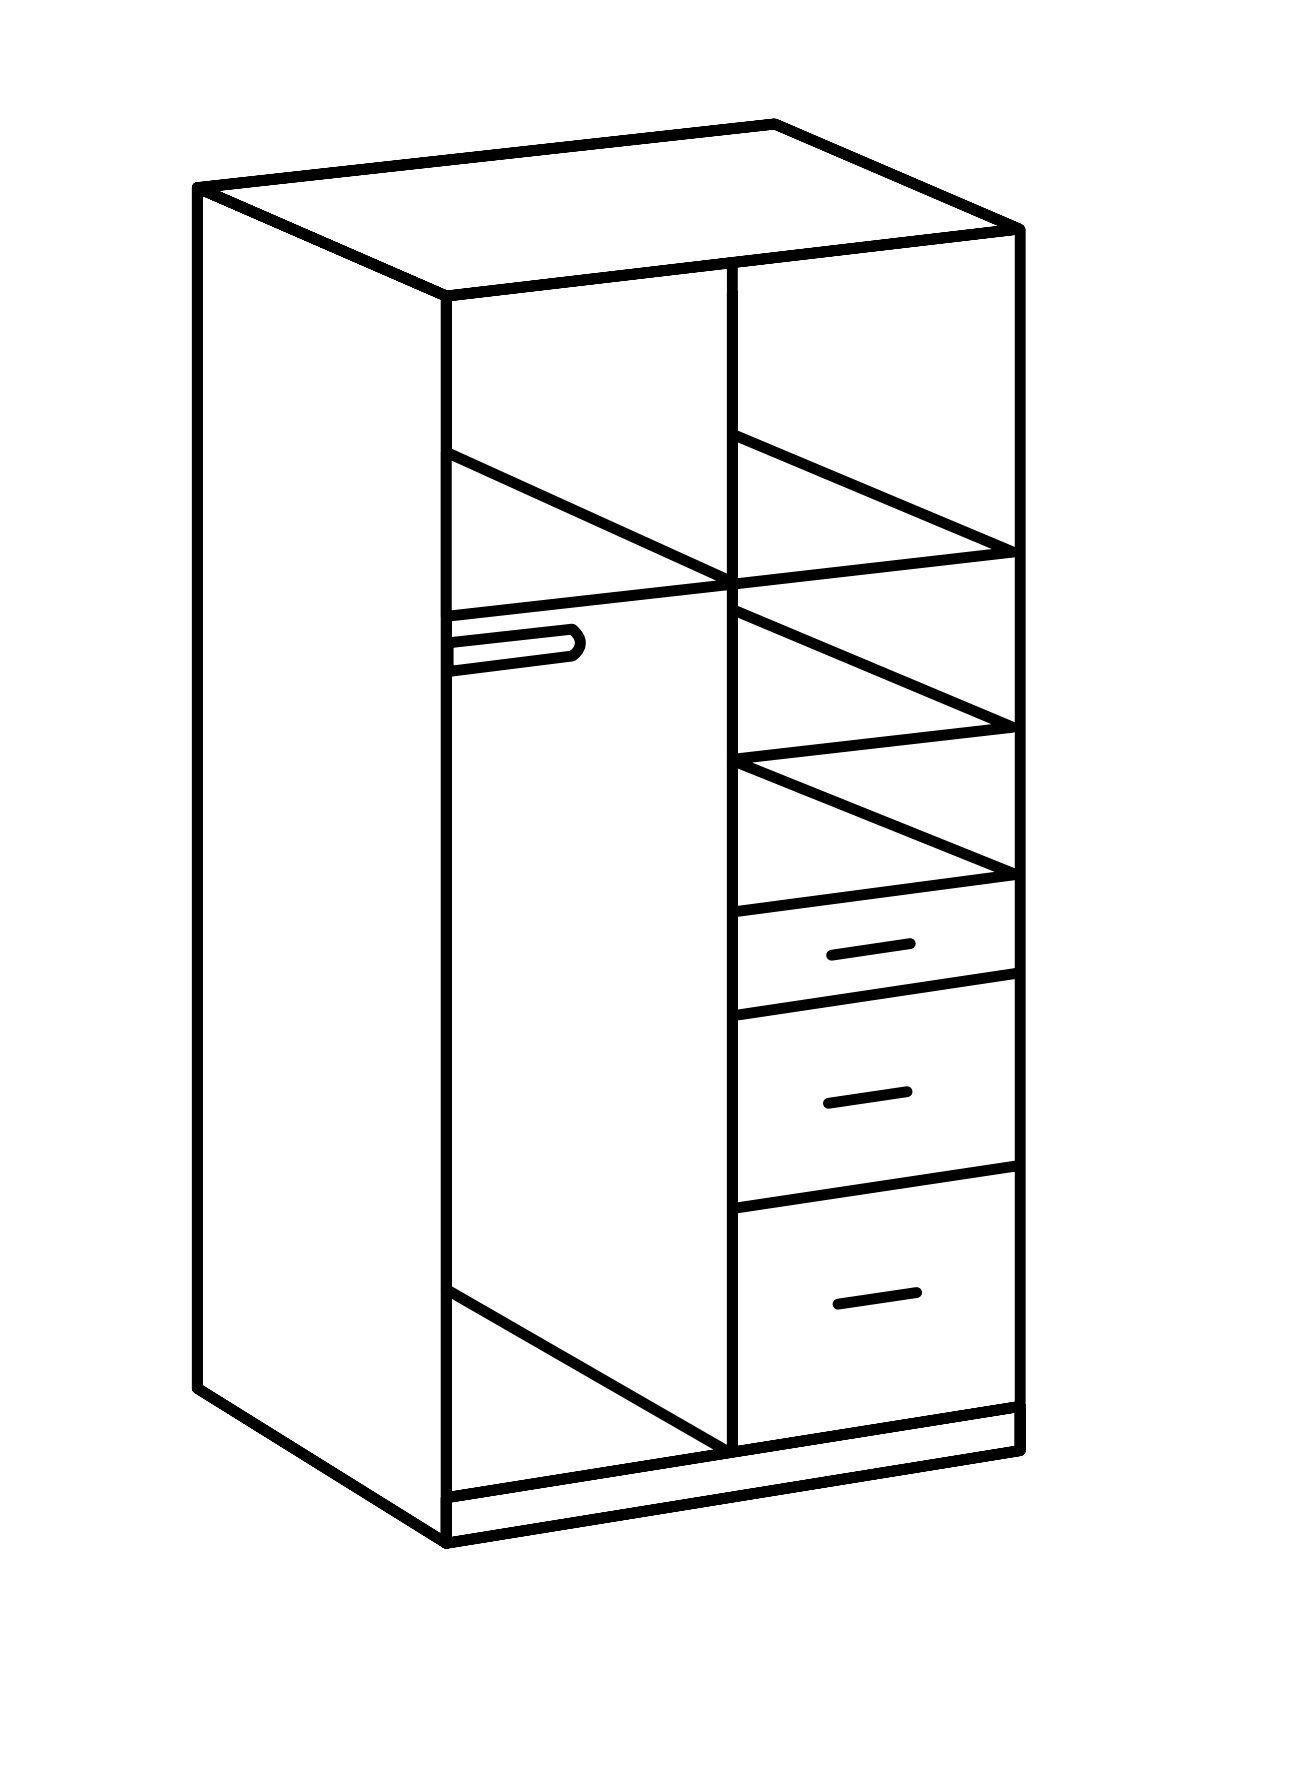 90x198x58 (B/H/T: in cm) freiraum 2 mit Click Kleiderschrank Schubladen 3 und Plankeneiche-Nachbildung Türen